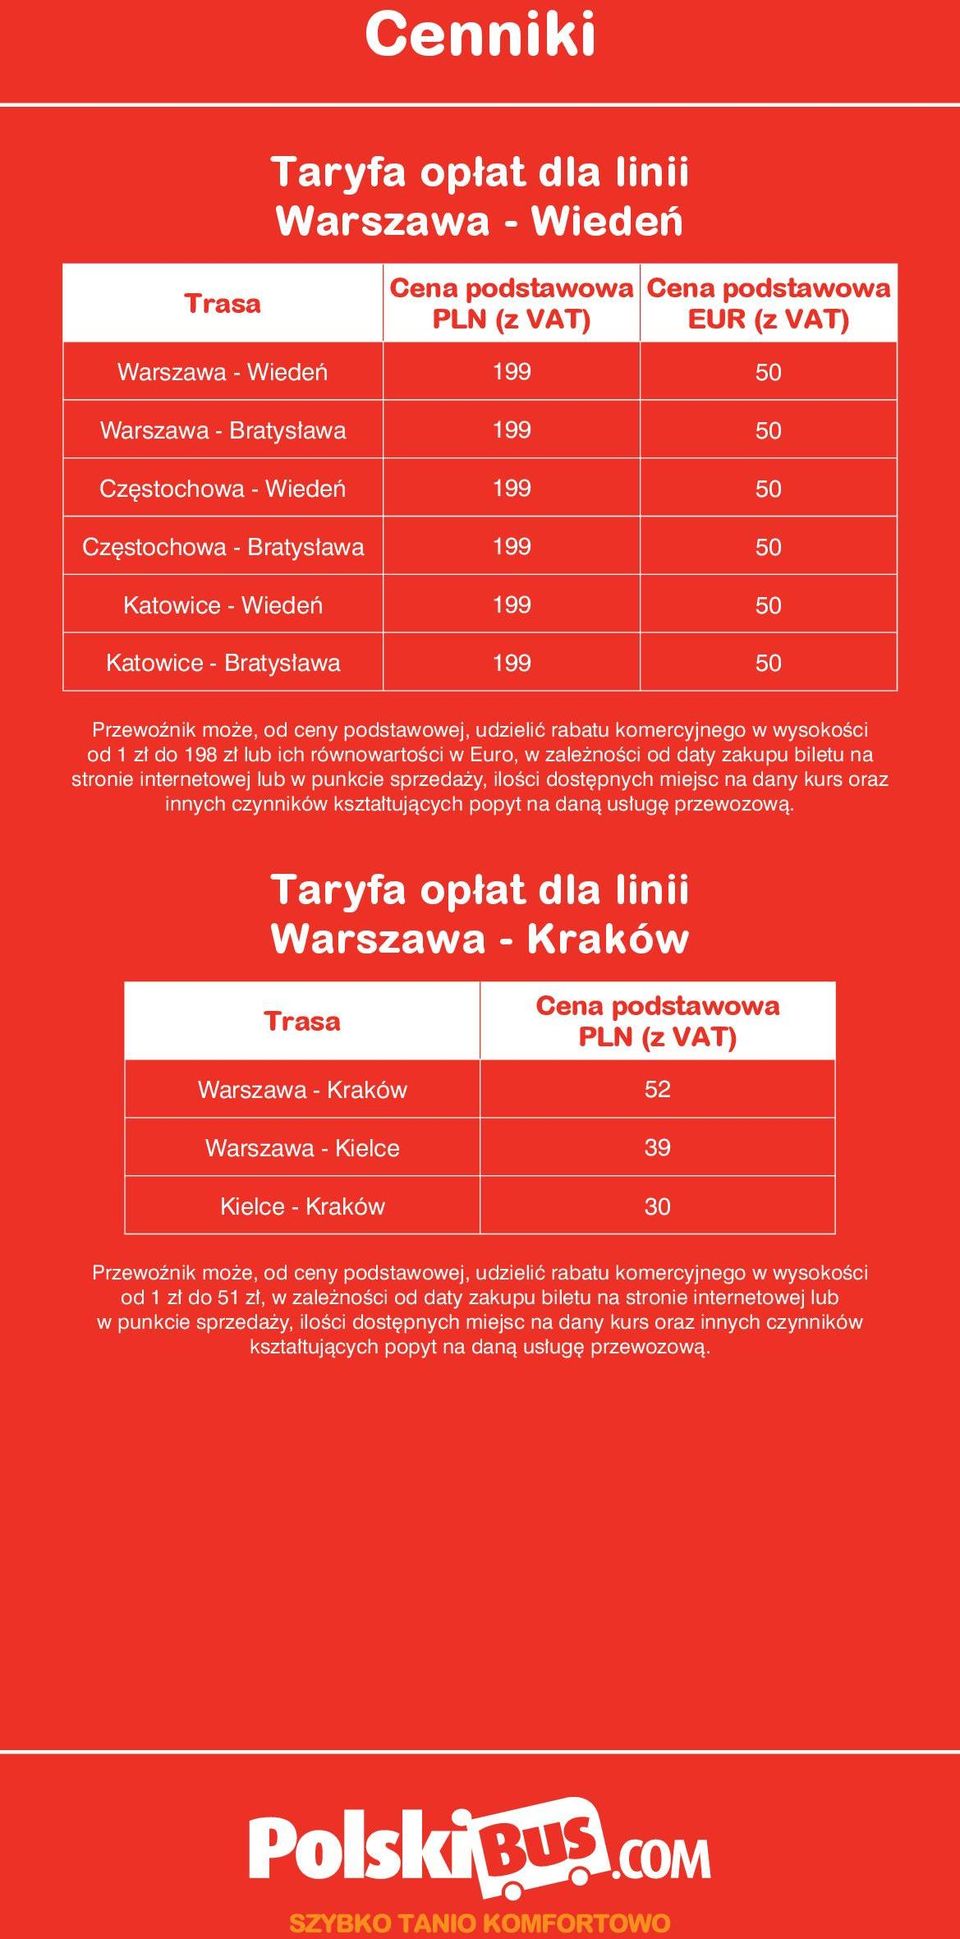 biletu na stronie internetowej lub w punkcie sprzedaży, ilości dostępnych miejsc na dany kurs oraz innych czynników Warszawa - Kraków